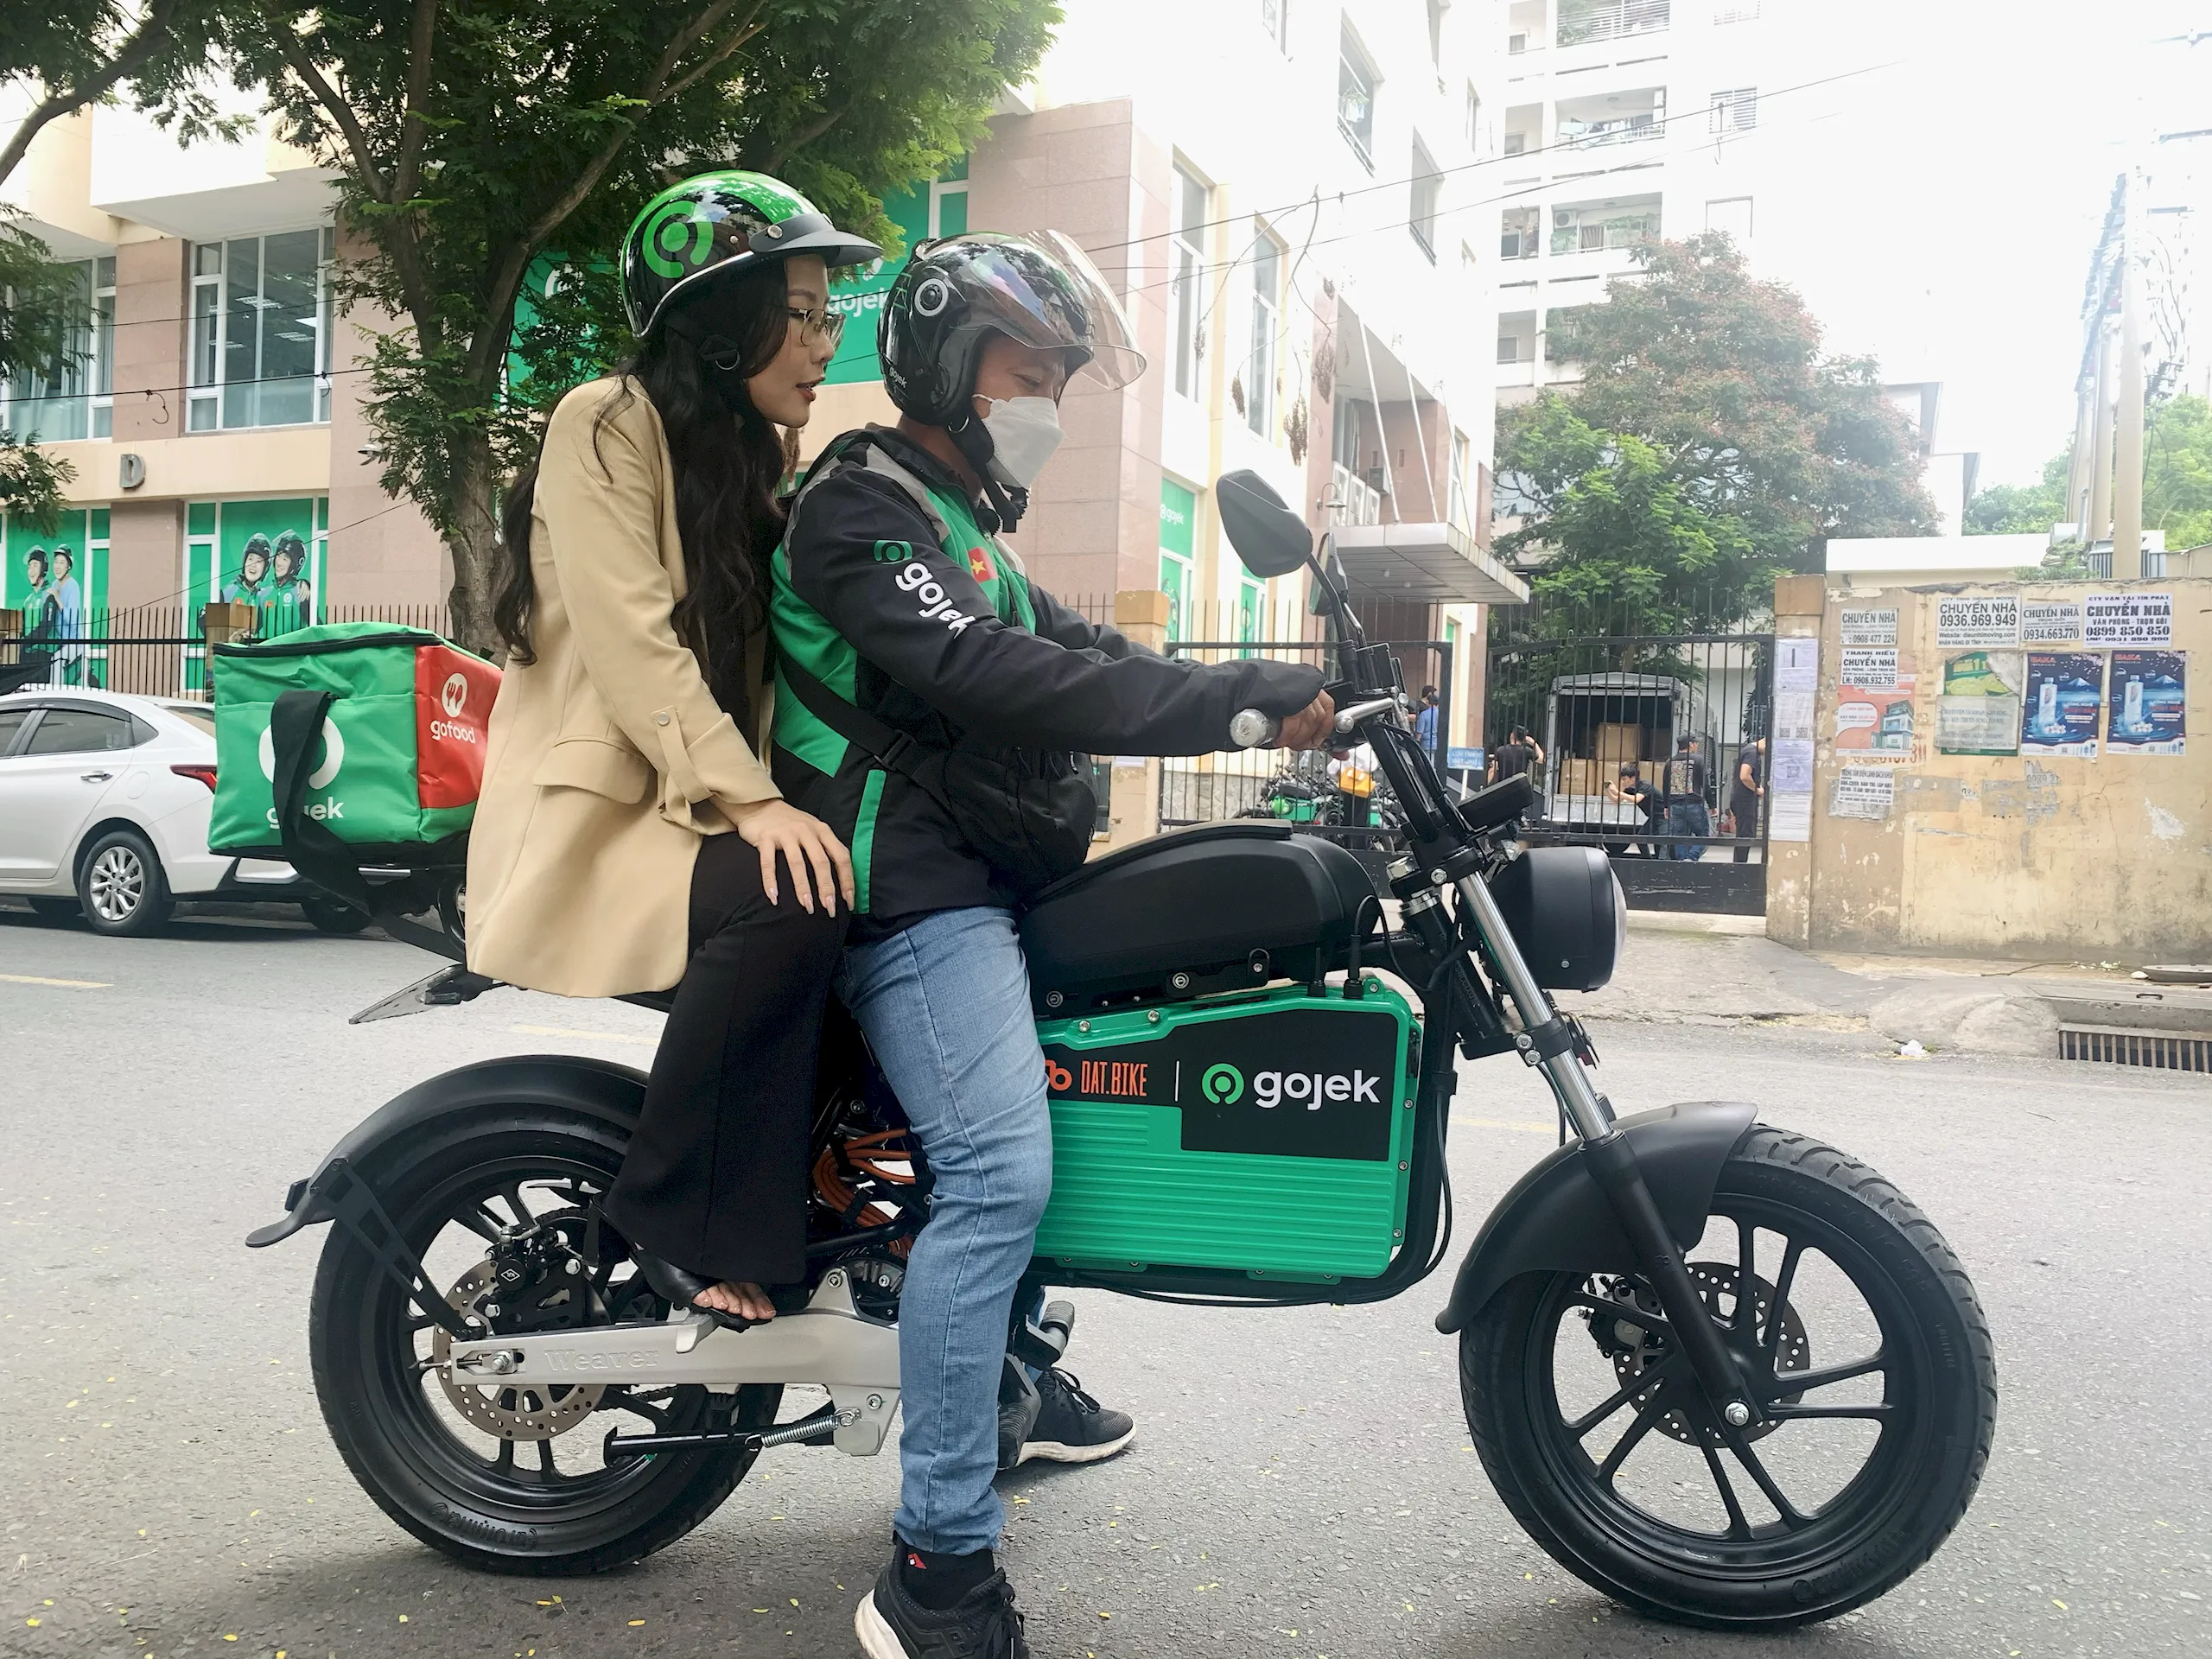 Gojek Việt Nam hợp tác với Dat Bike thí điểm vận chuyển hành khách bằng xe máy điện